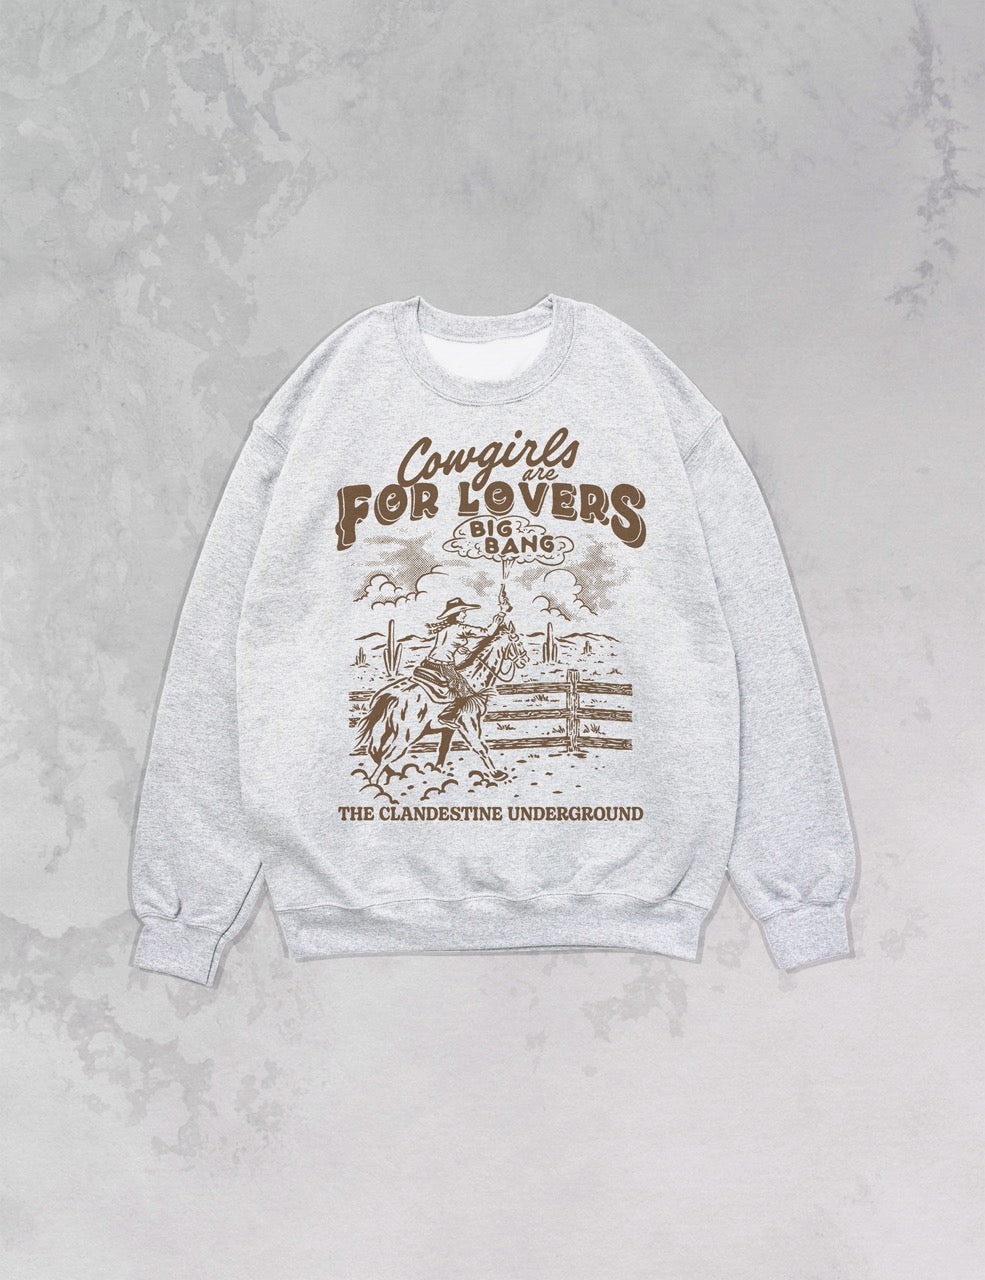 Underground Original Design: Cowgirls are for Lovers Oversized Sweatshirt